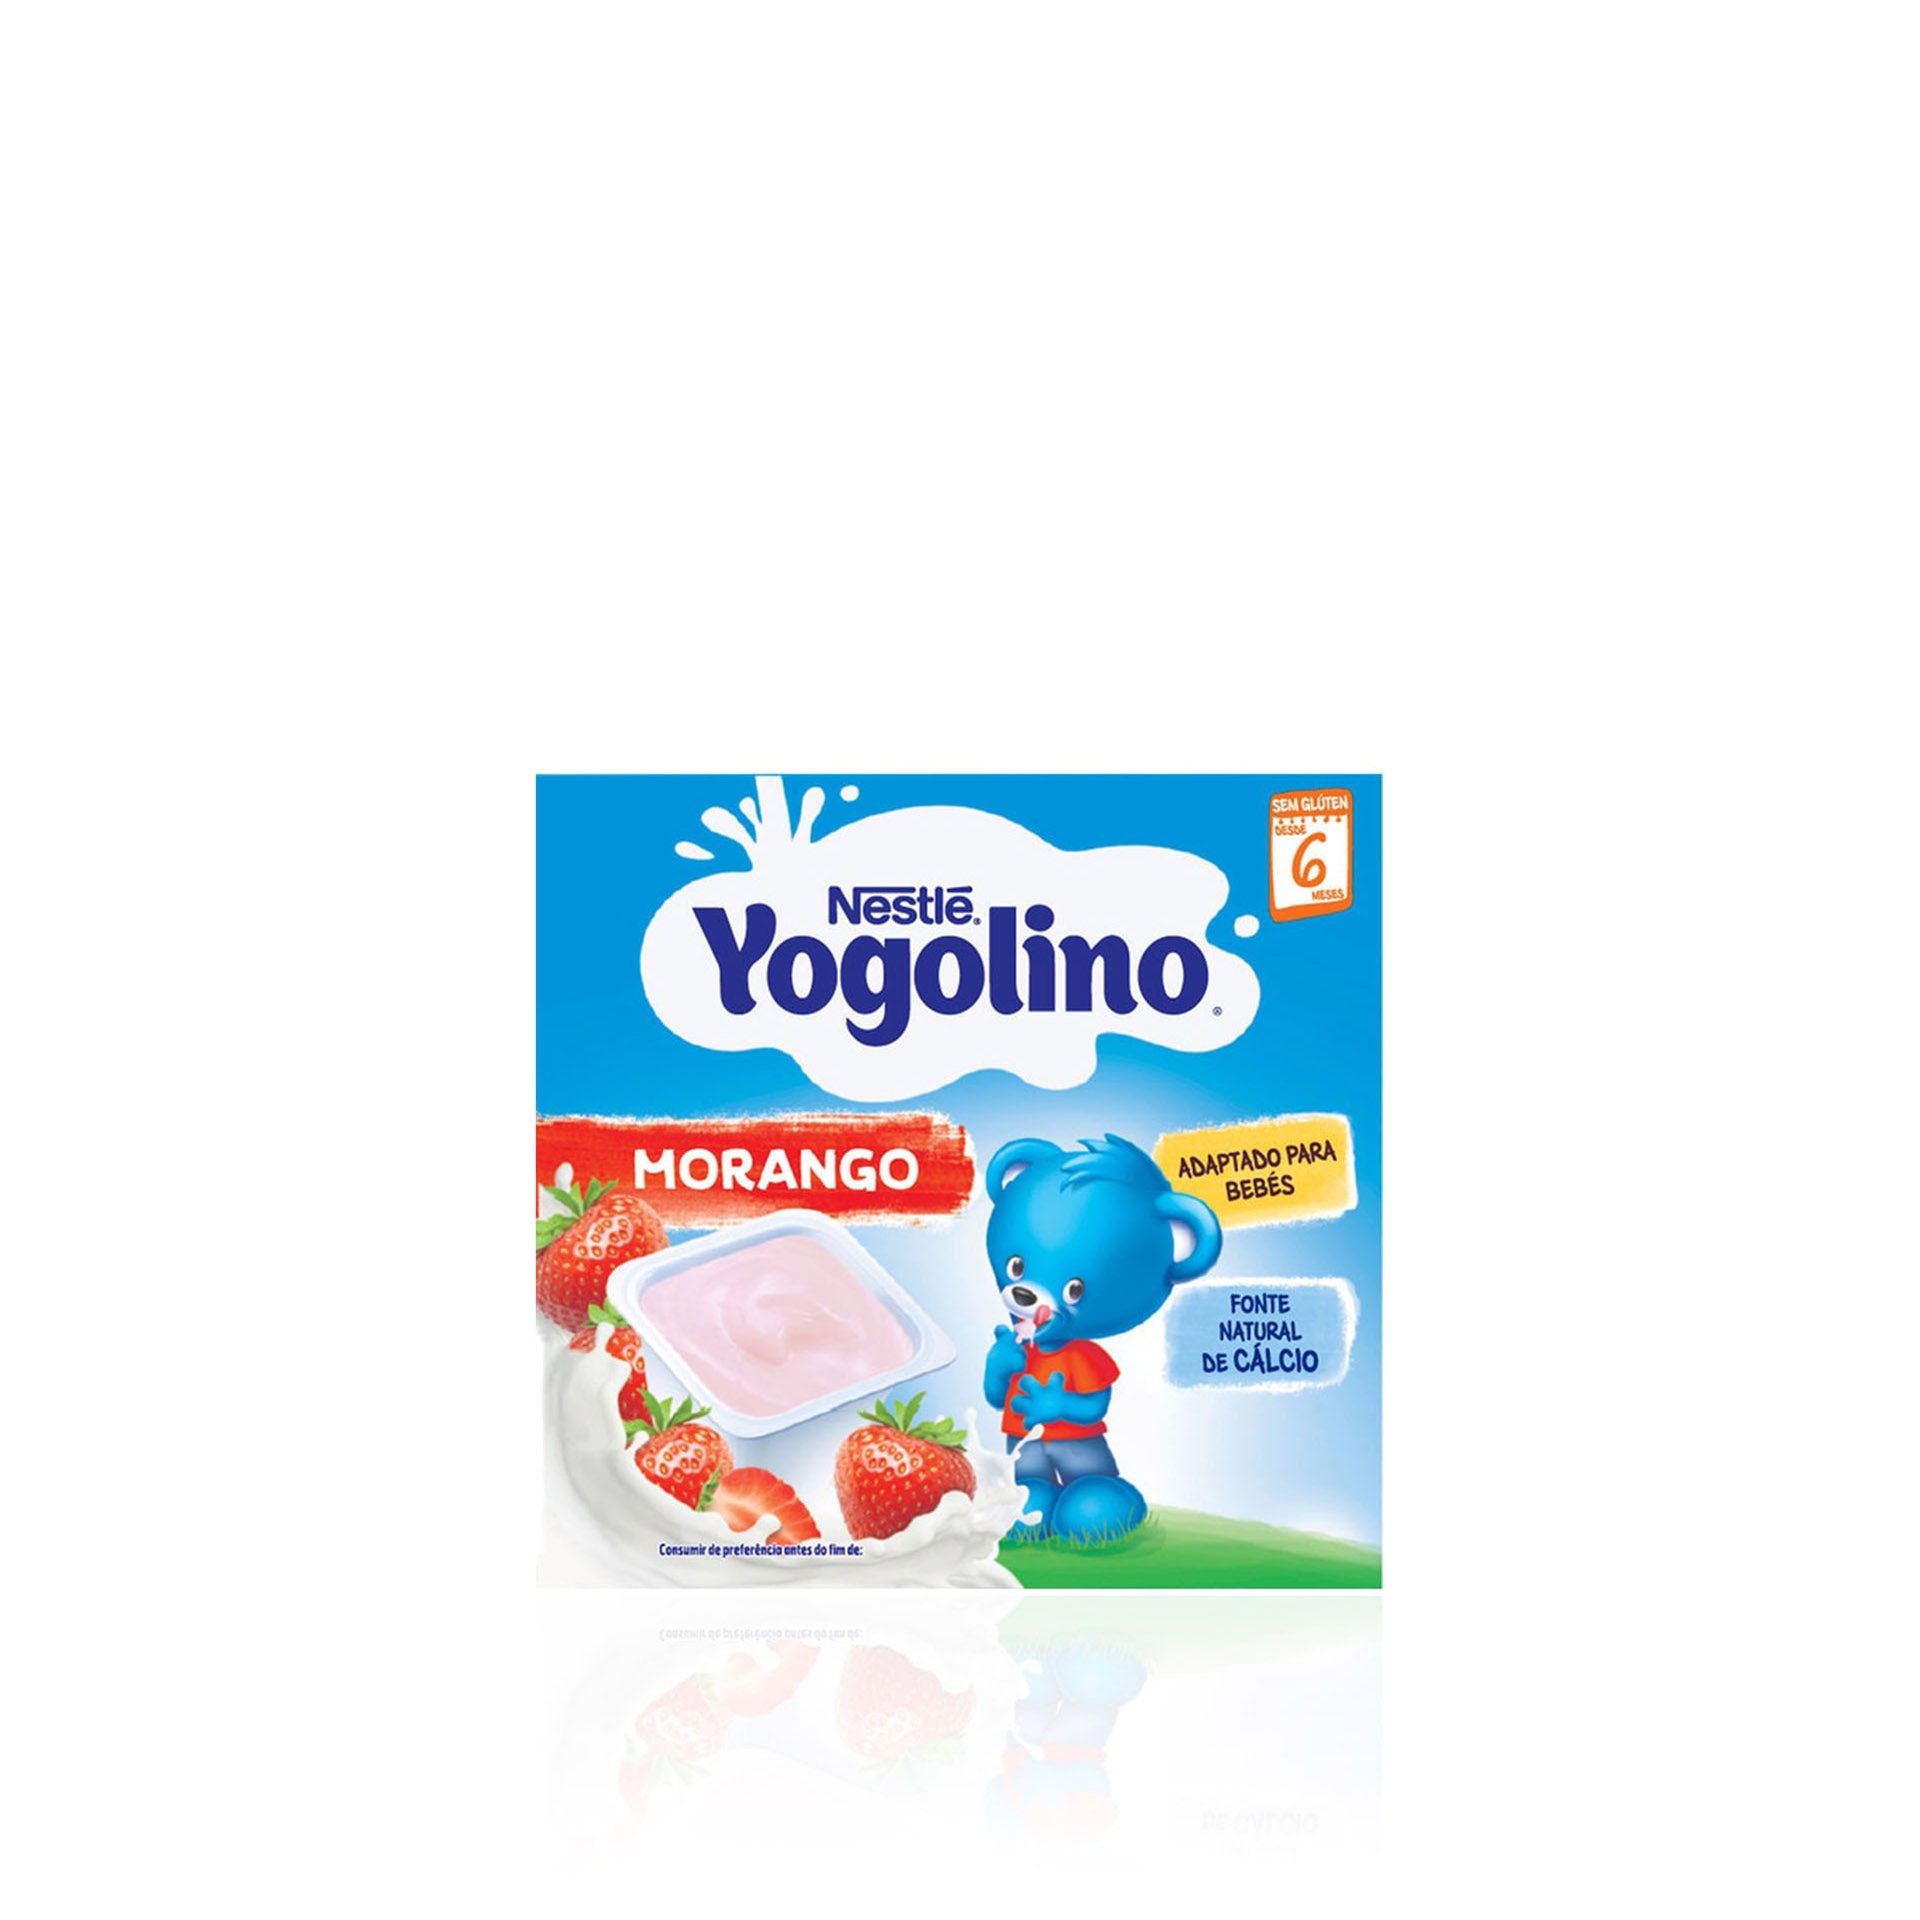 Nestlé Yogolino Morango (+6 meses) Pack 4 x 100 gr